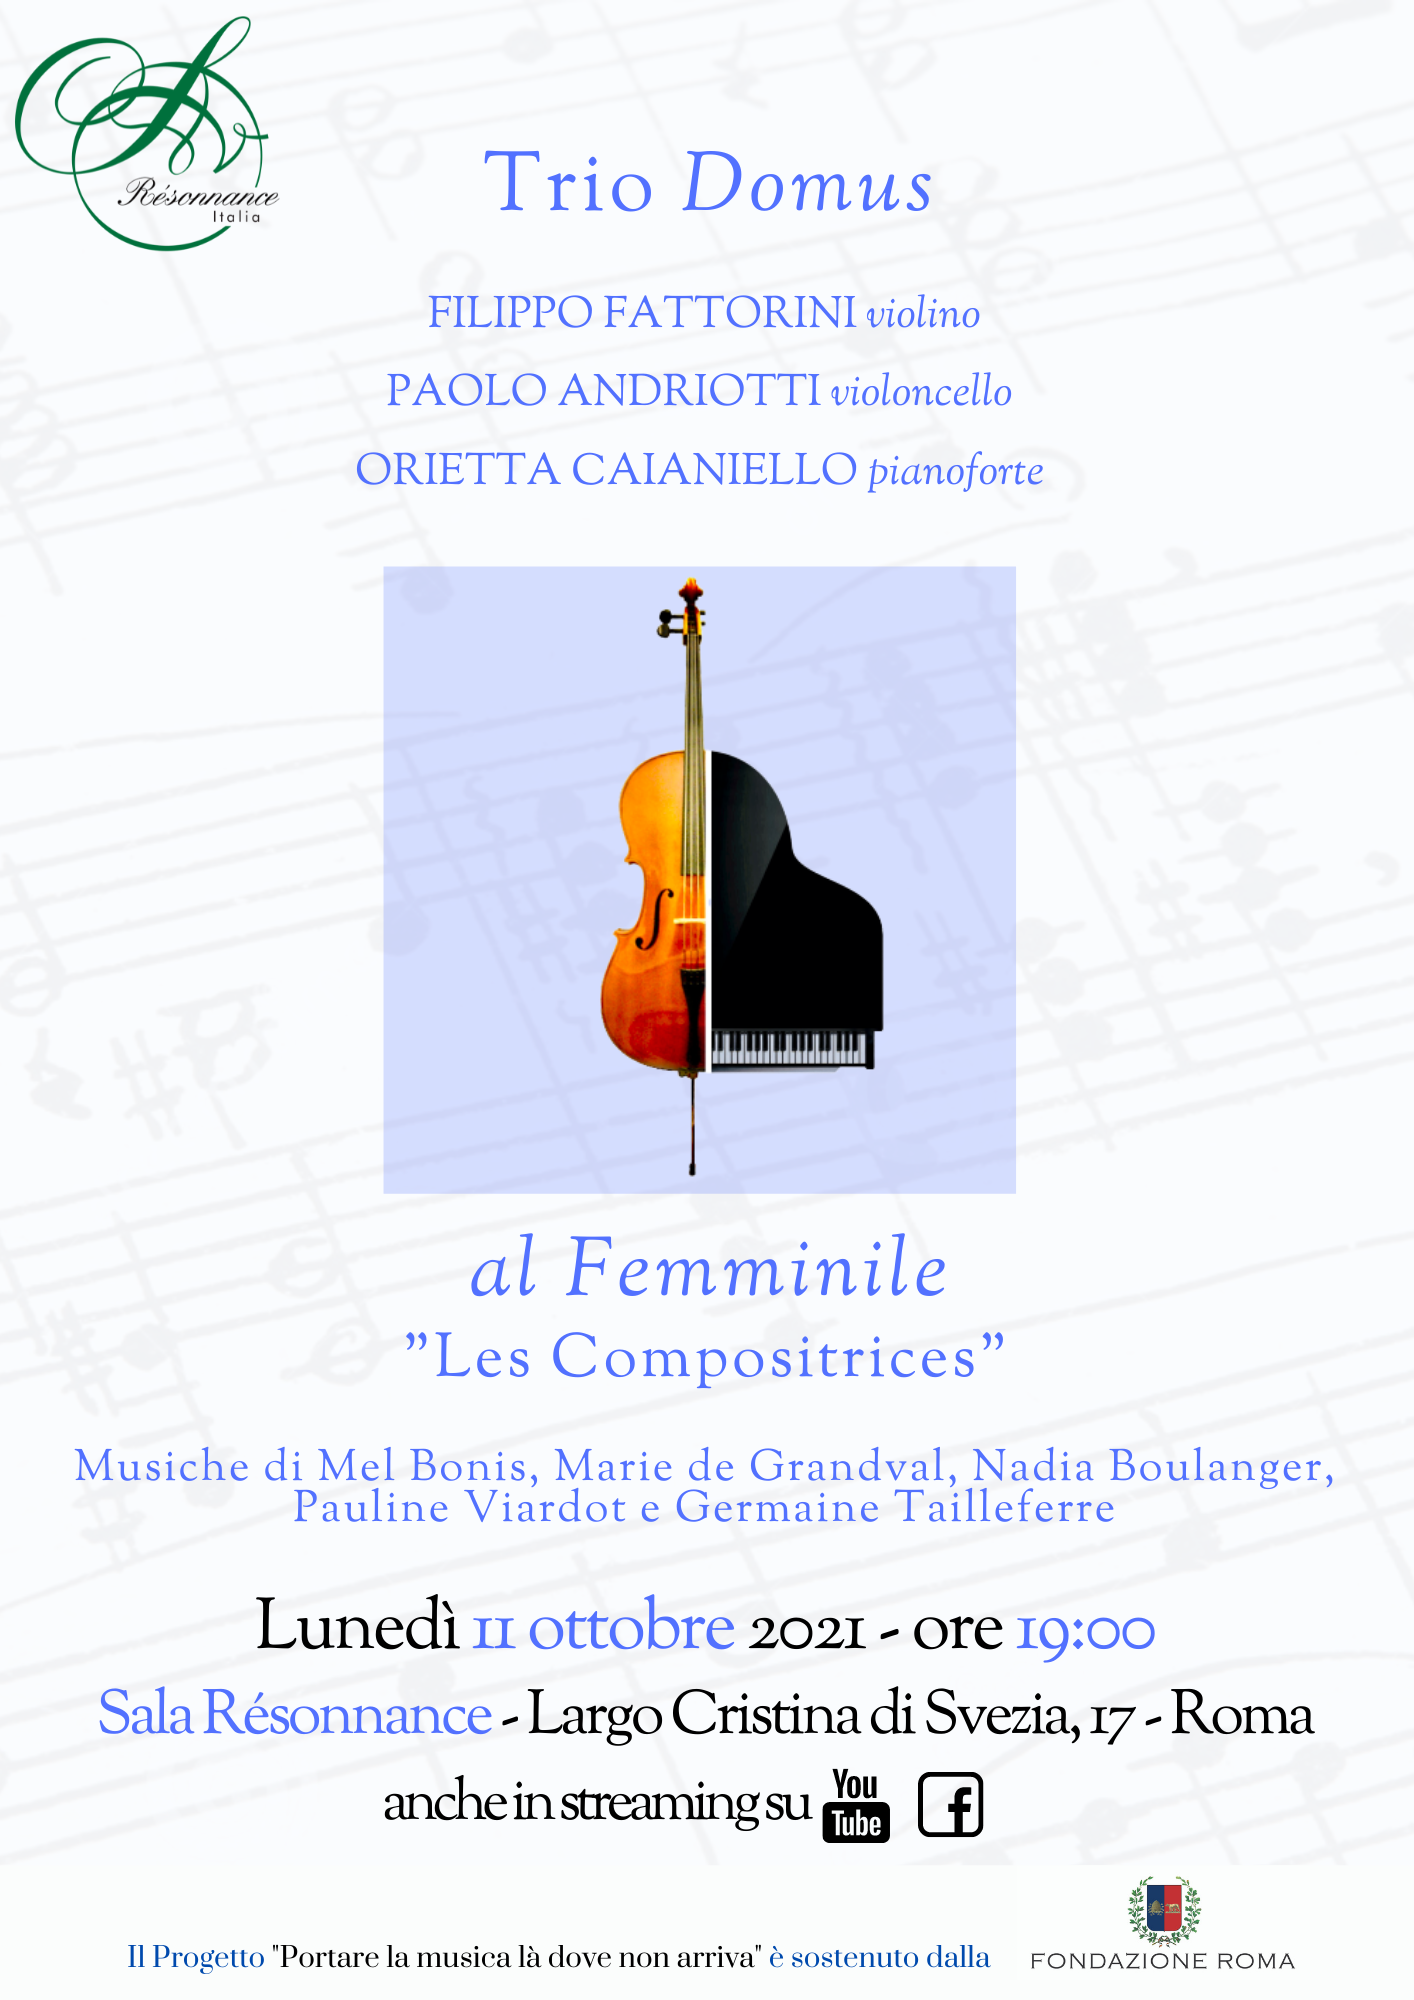 al Femminile - "Les Compositrices", Trio Domus